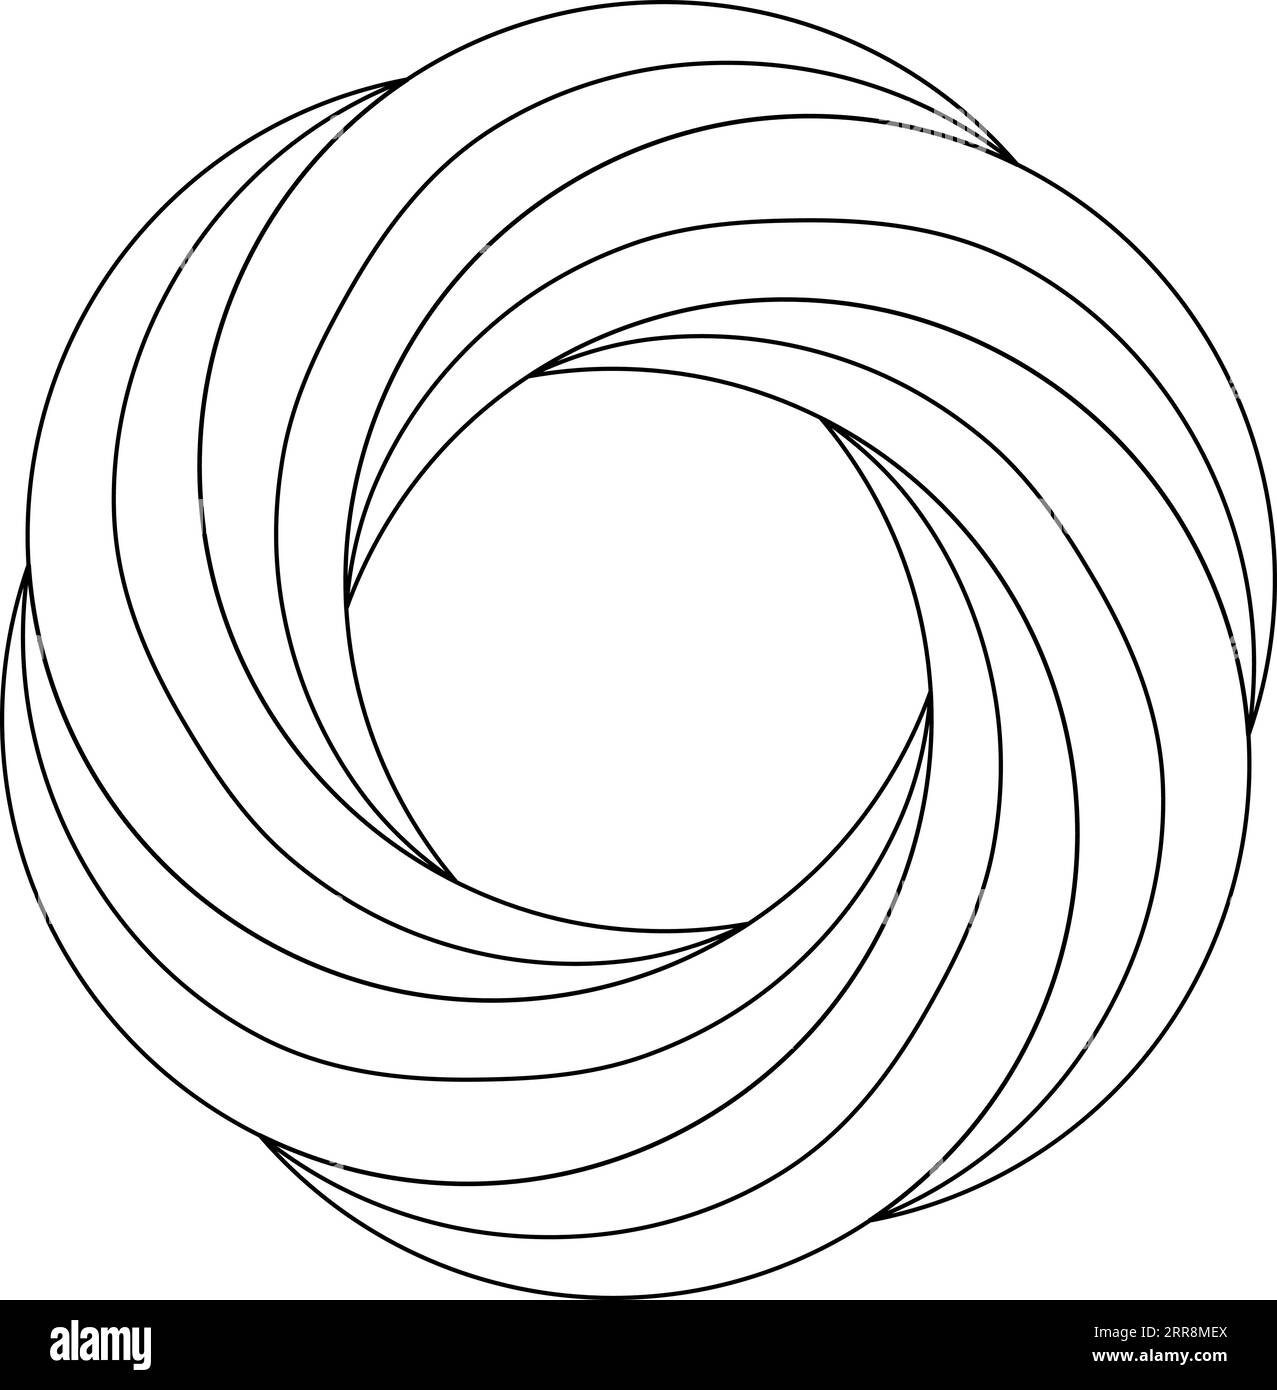 Kreisförmige Ringschablone mit Blumenmuster, die feiner wirbelt Stock Vektor